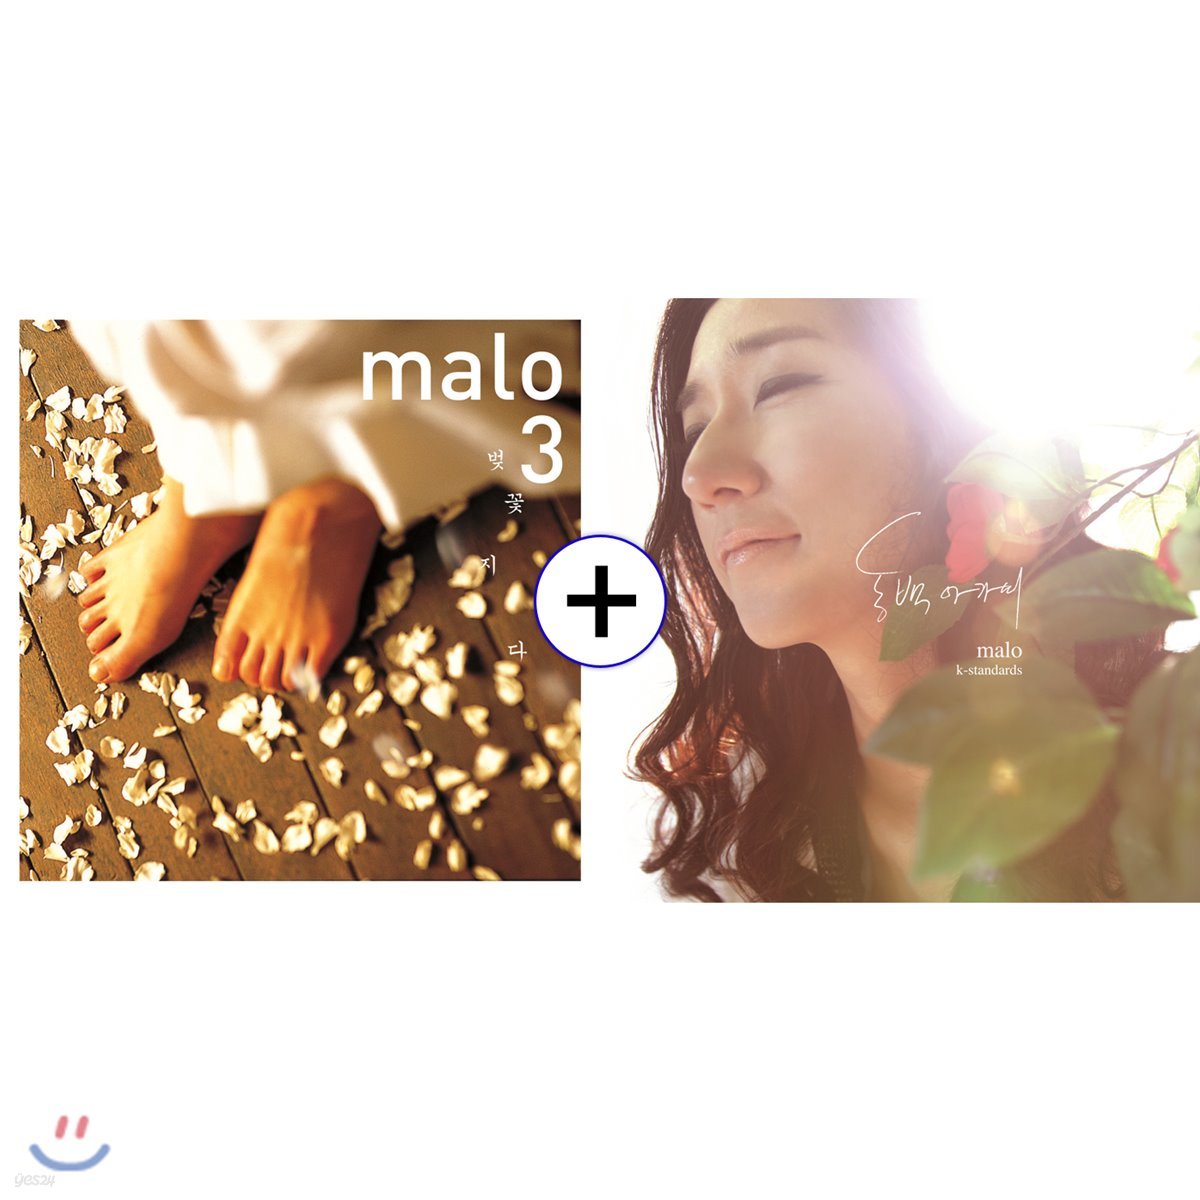 말로 (Malo) - 벚꽃지다 [화이트 컬러 LP] + 동백아가씨 [레드 컬러 LP] SET